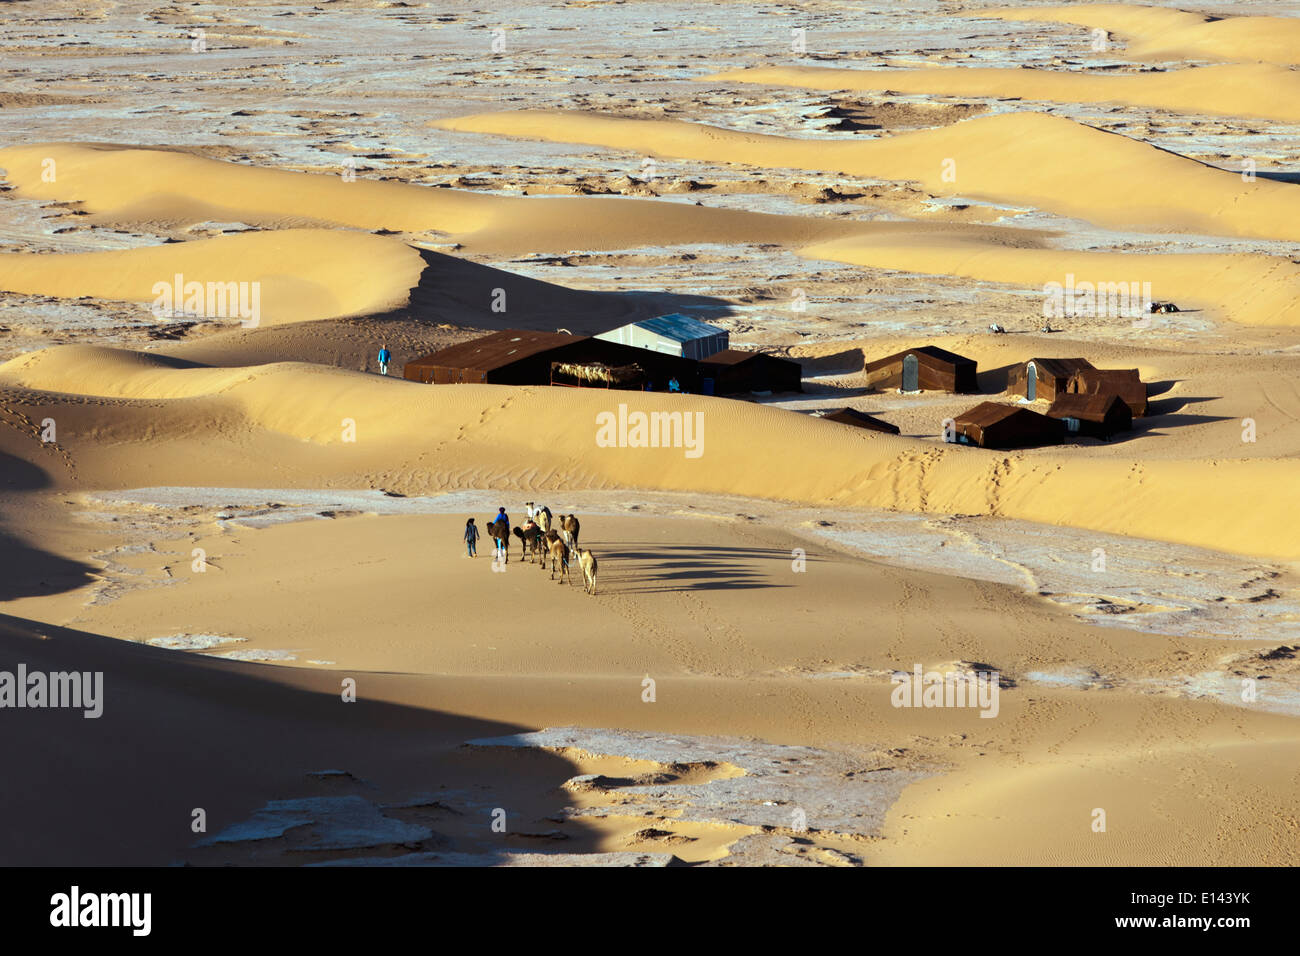 Il Marocco, Mhamid, Erg Chigaga sanddunes. Deserto del Sahara. I driver del cammello e camel caravan arrivando a tourist camp, bivacco. Foto Stock